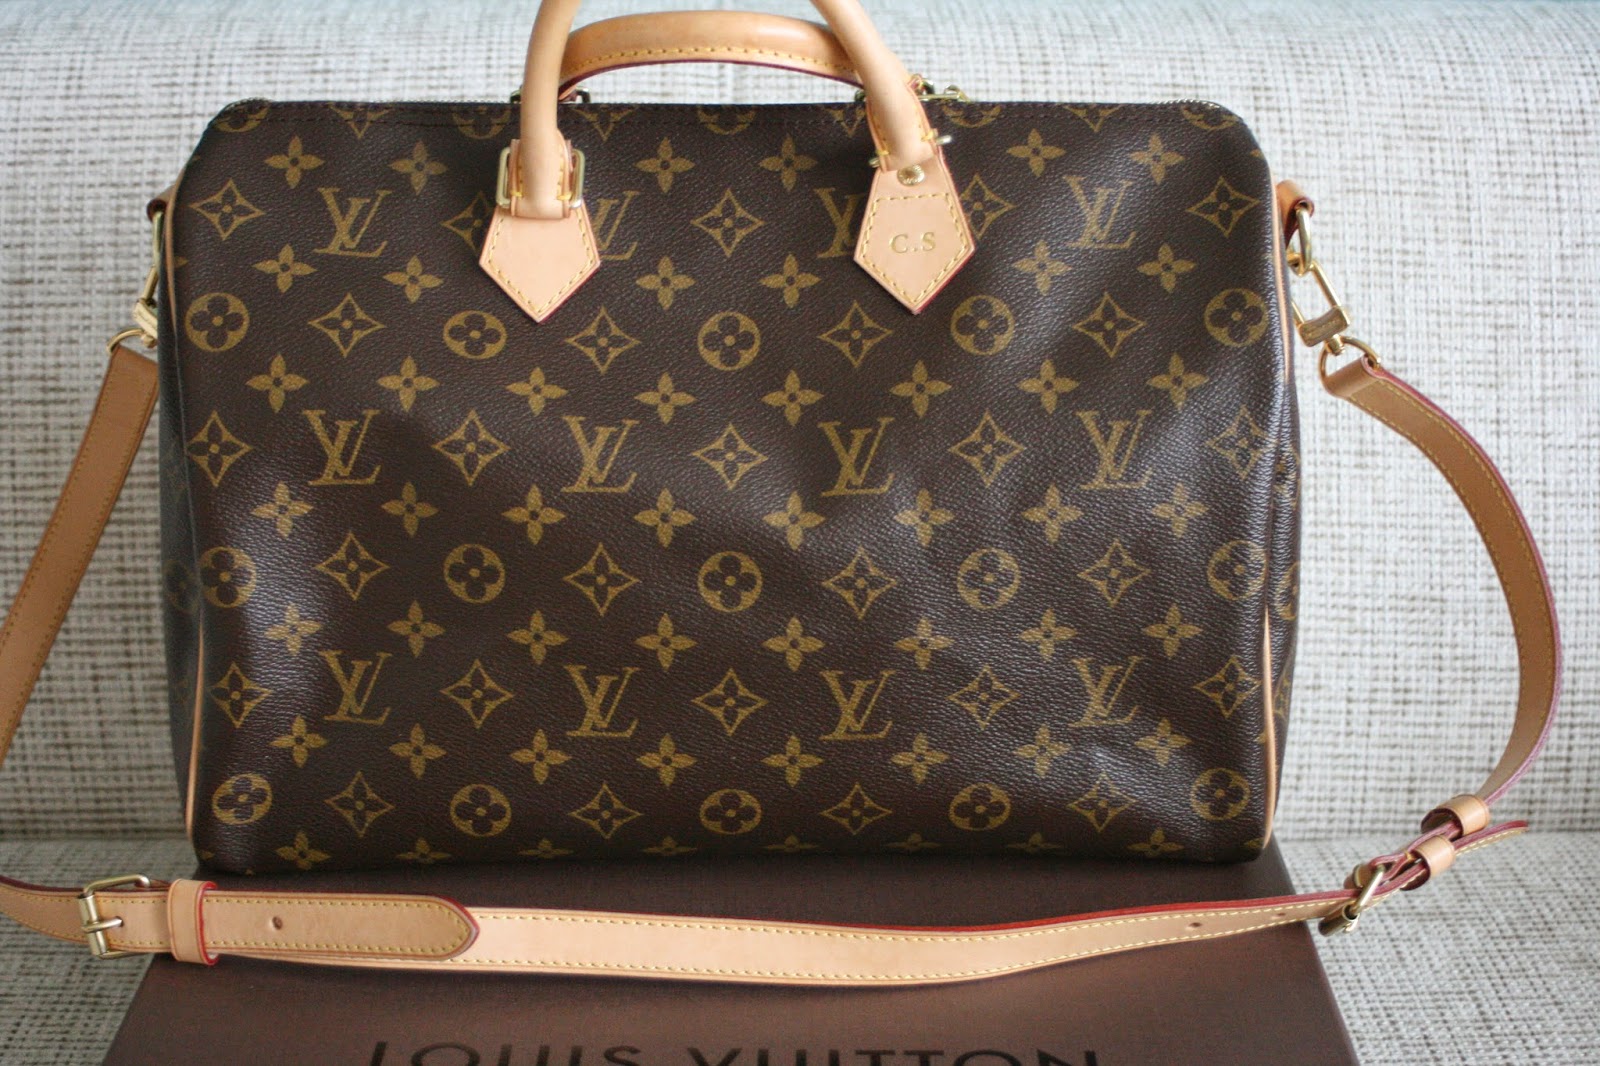 Shop my Closet - Louis Vuitton Tasche zu verkaufen - Glam up your Lifestyle